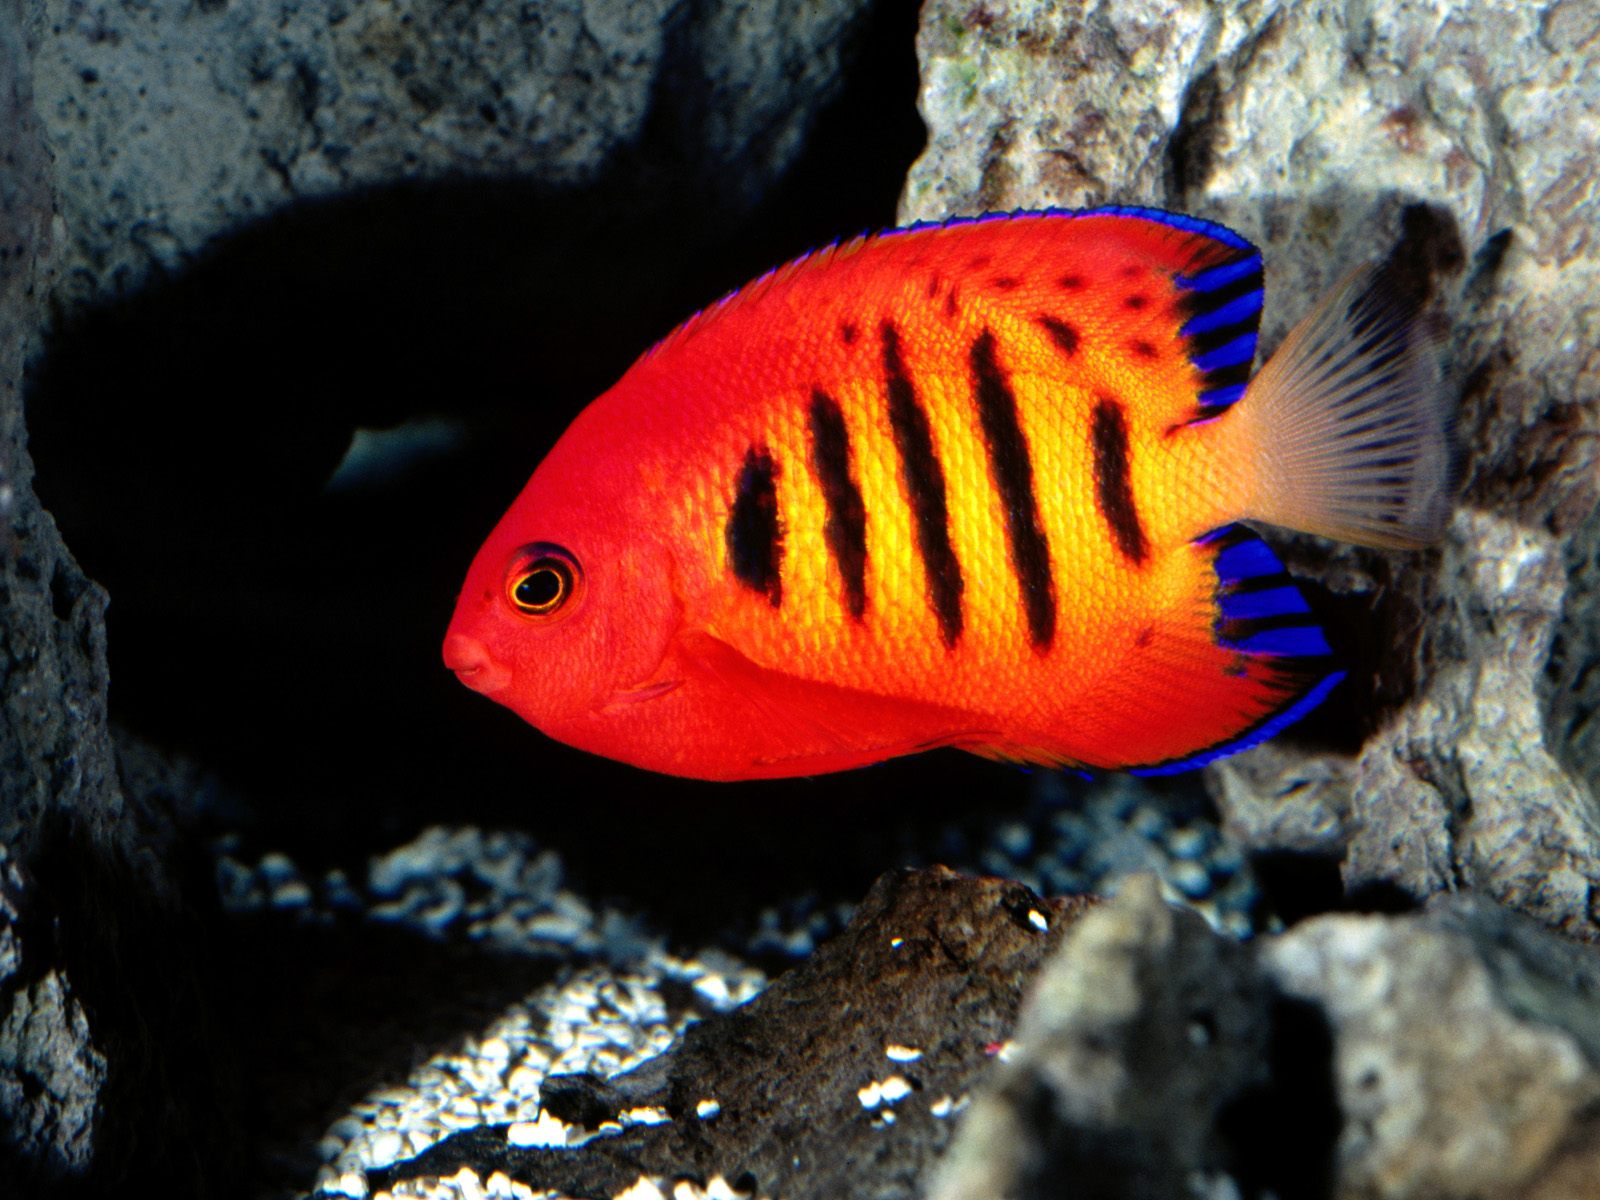 красная рыбка, полосатая, синие перышки, глубина, под водой, море, red fish, striped, blue feathers, depth, underwater, sea